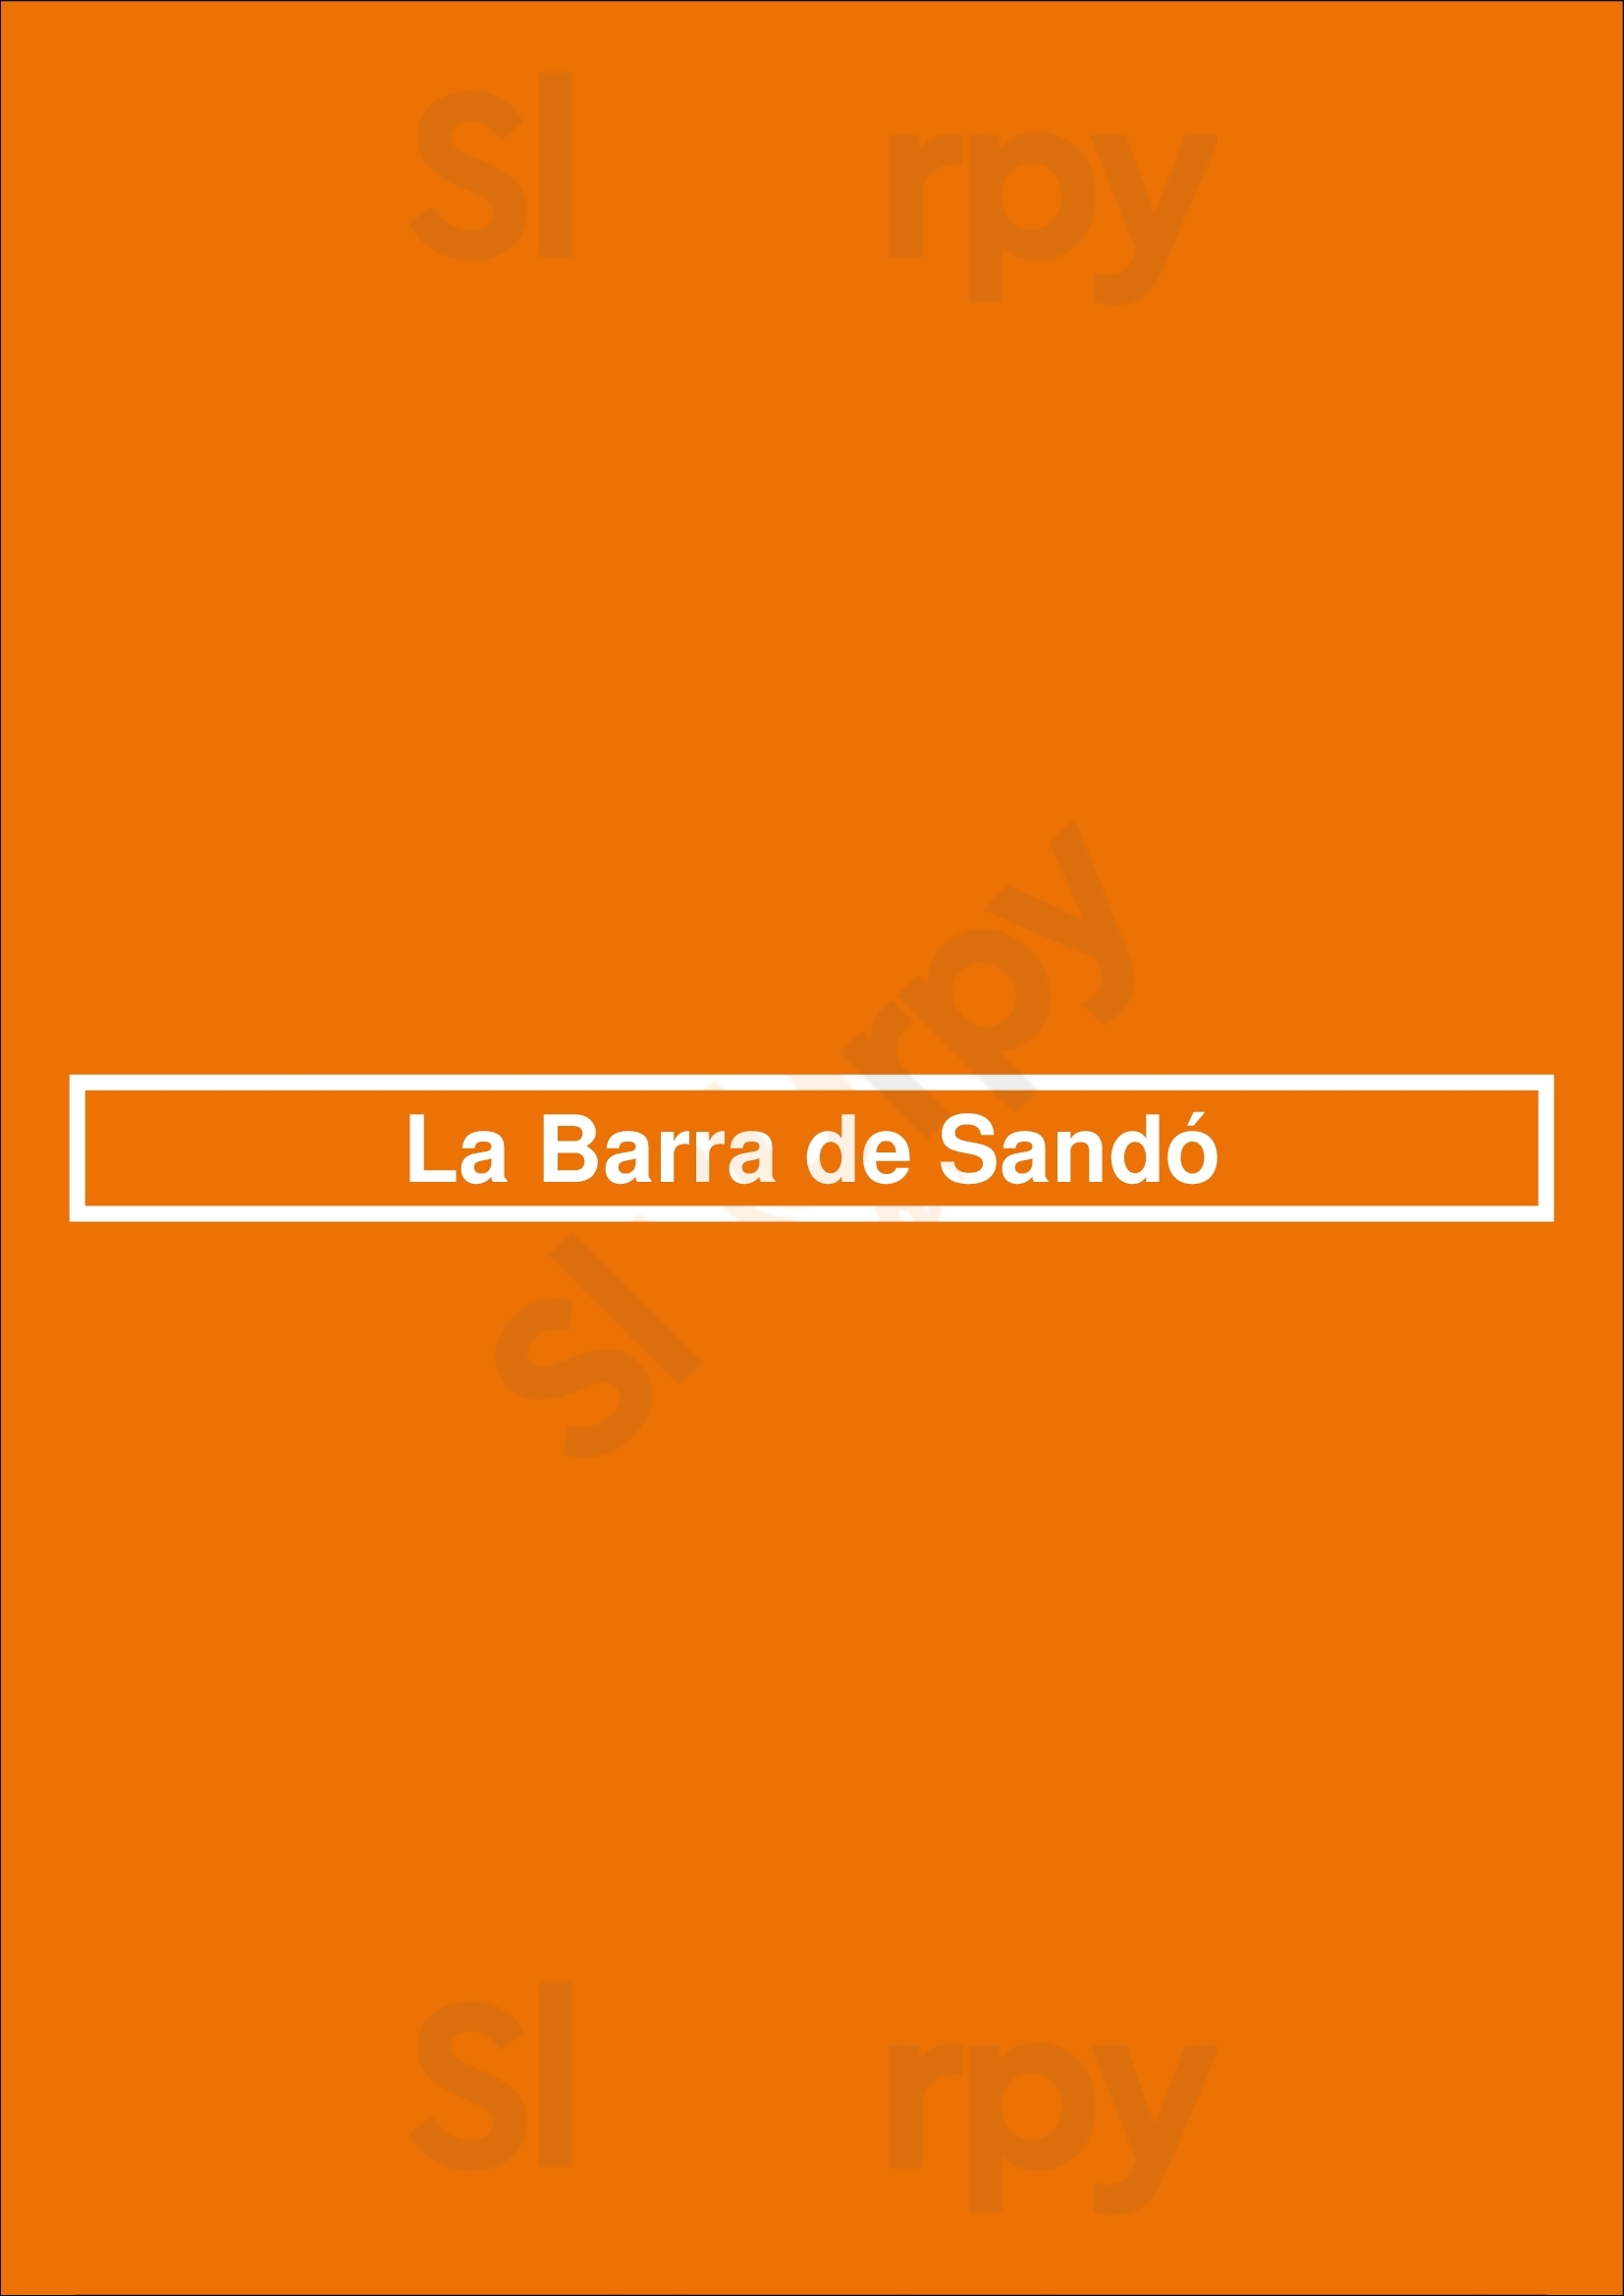 La Barra De Sandó Madrid Menu - 1